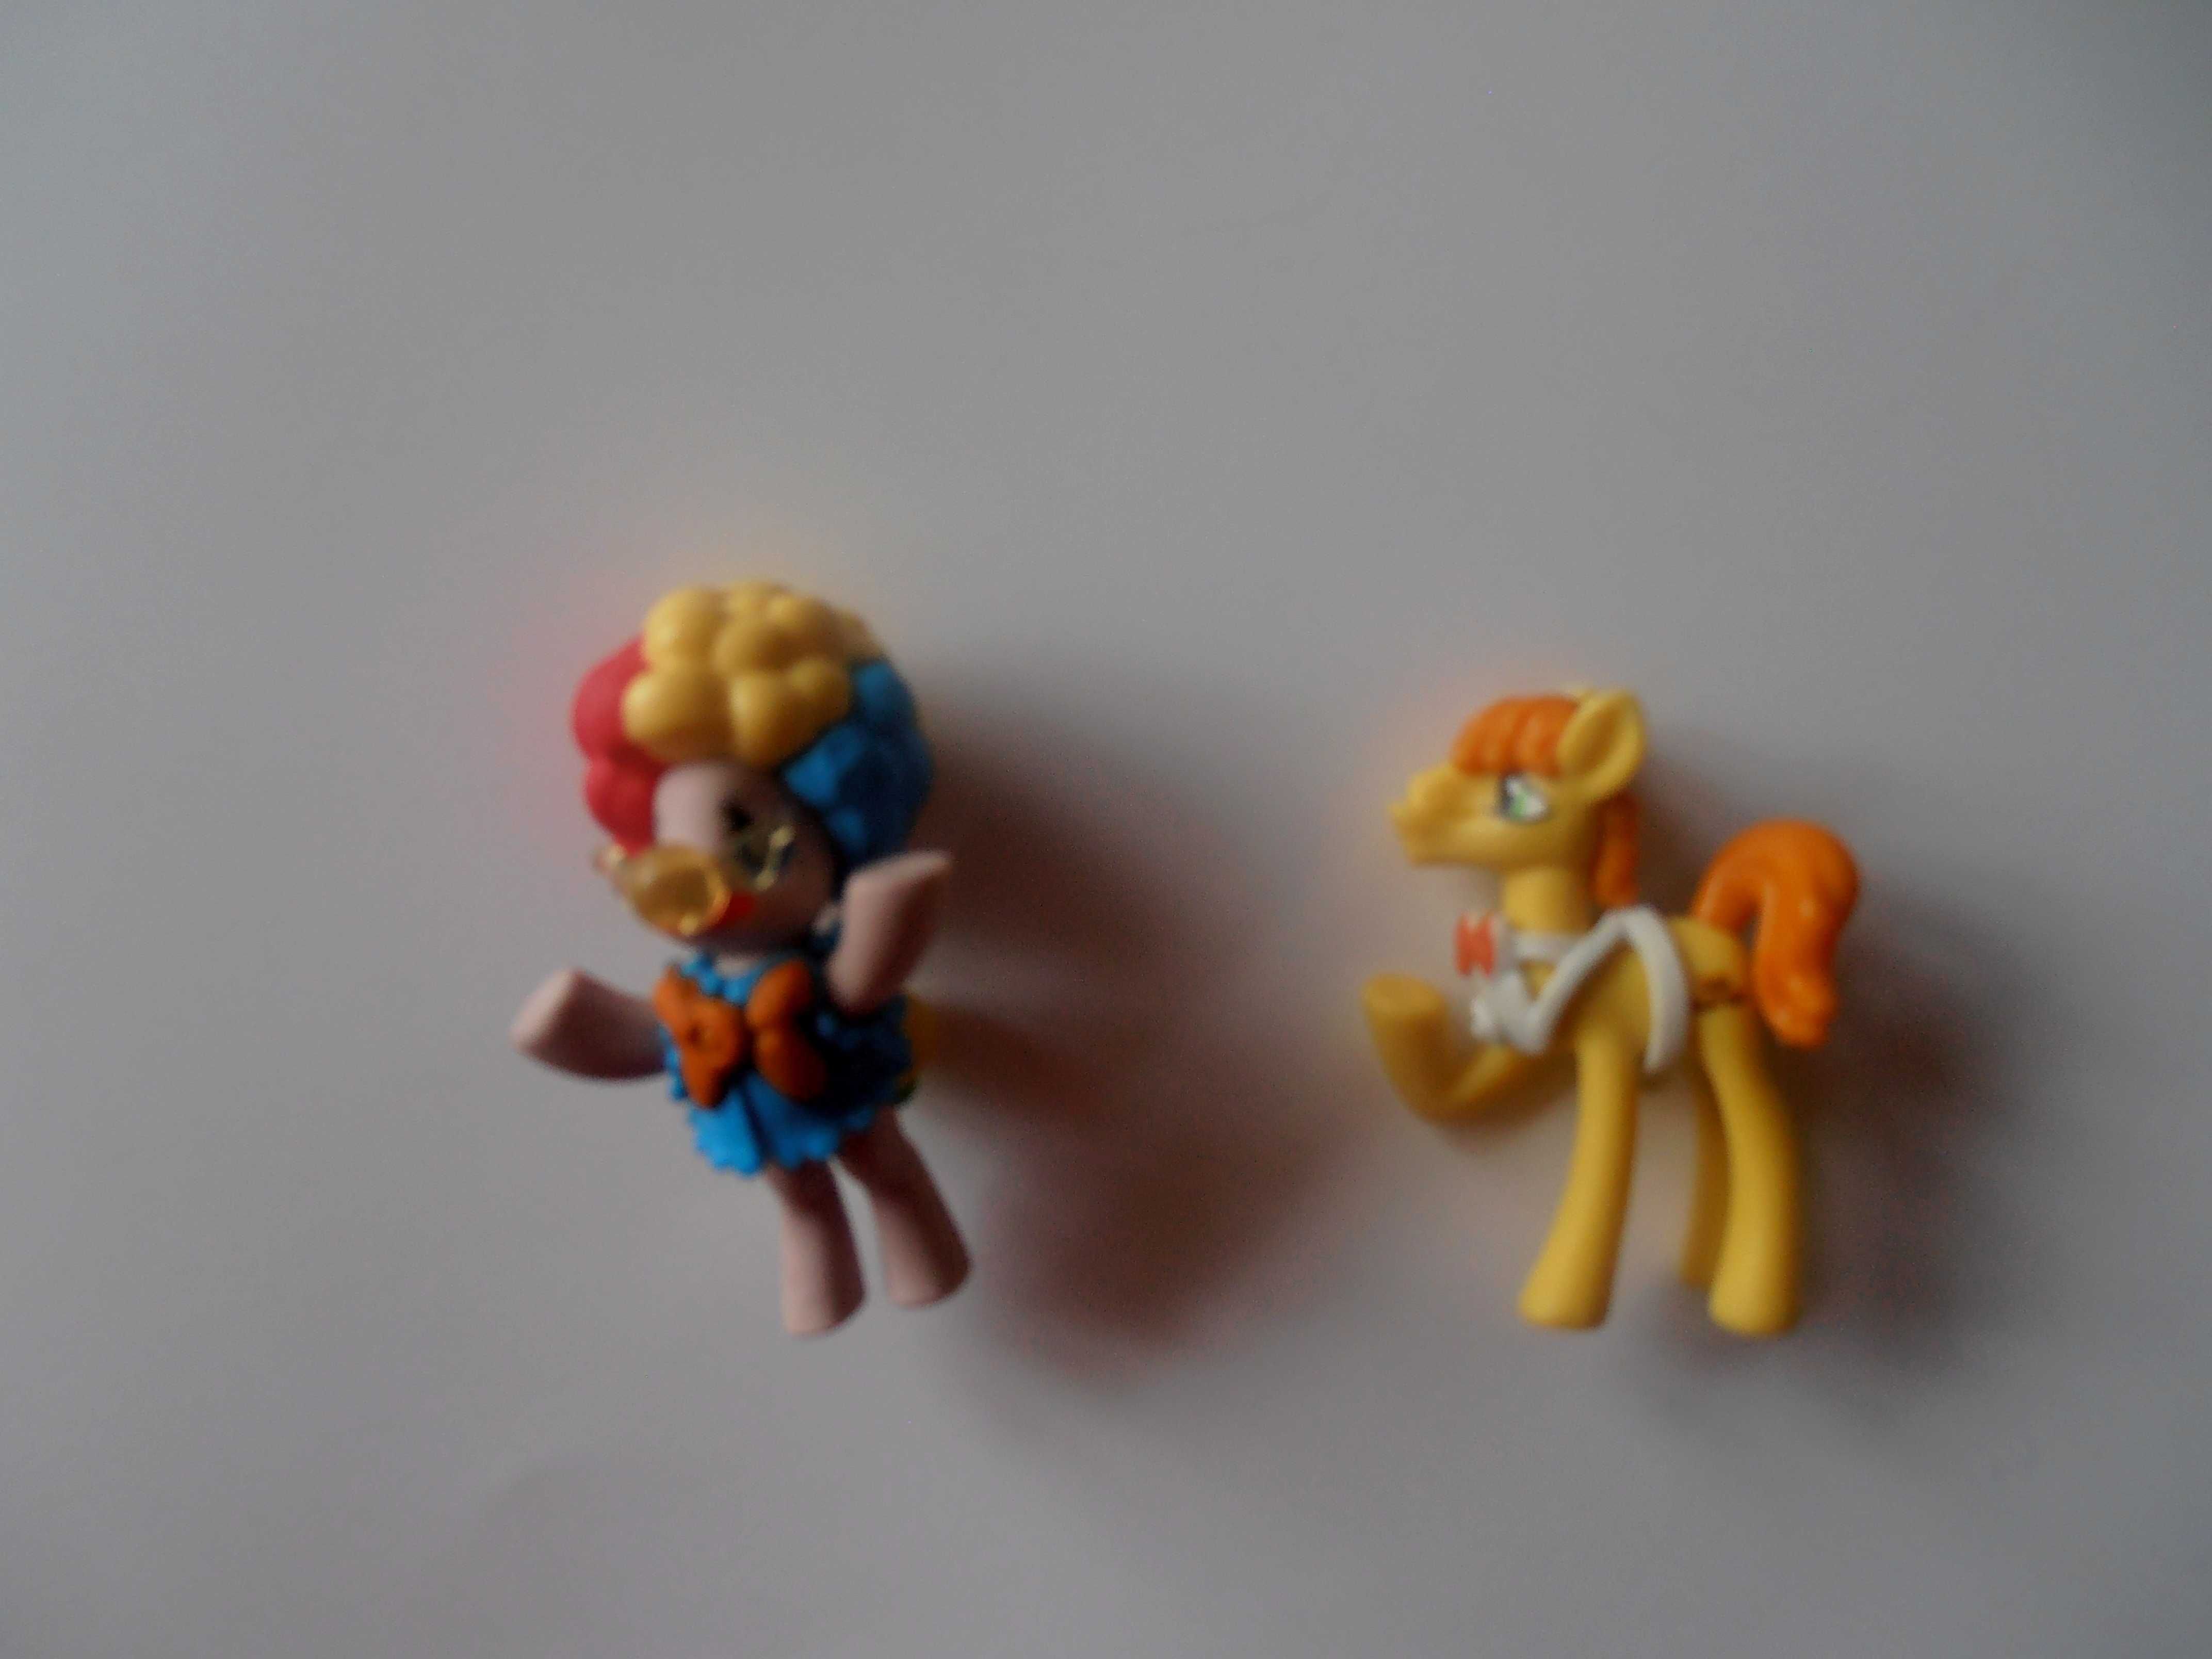 Фігурки поні My Little Pony містер Кейк Керрот і мер Понівіля  Hasbro